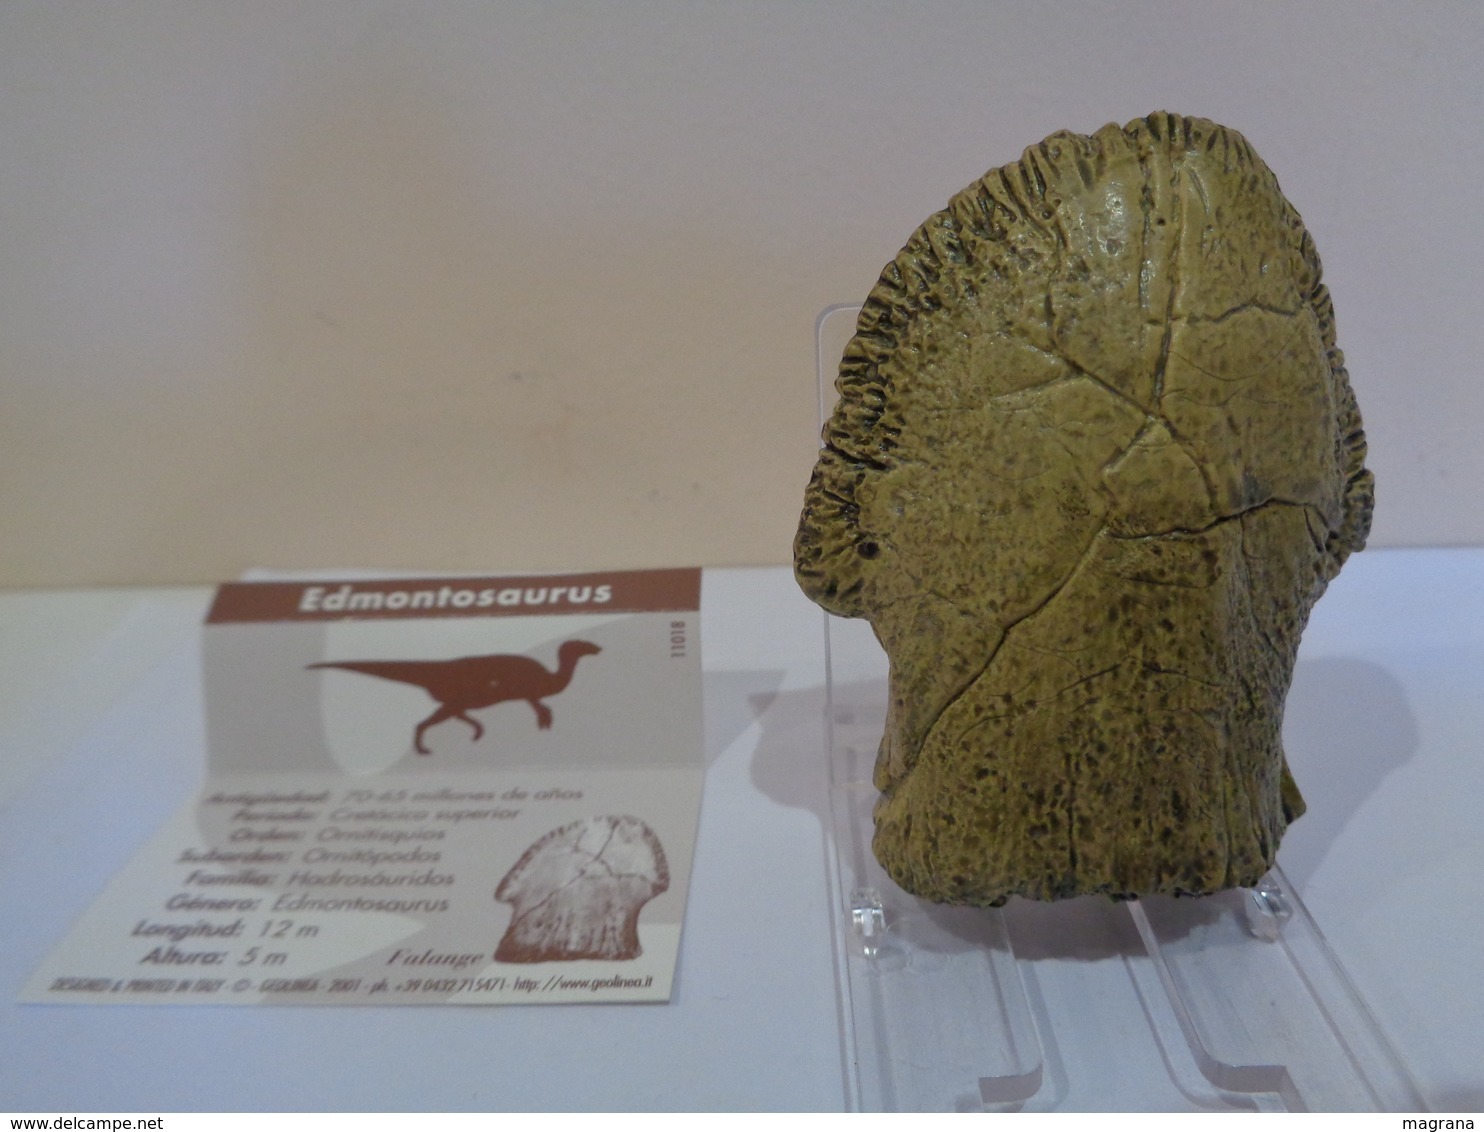 Colección de 27 replicas de garras y dientes fósiles de dinosaurios en 4 estuches. Marca Geofin-Italy.